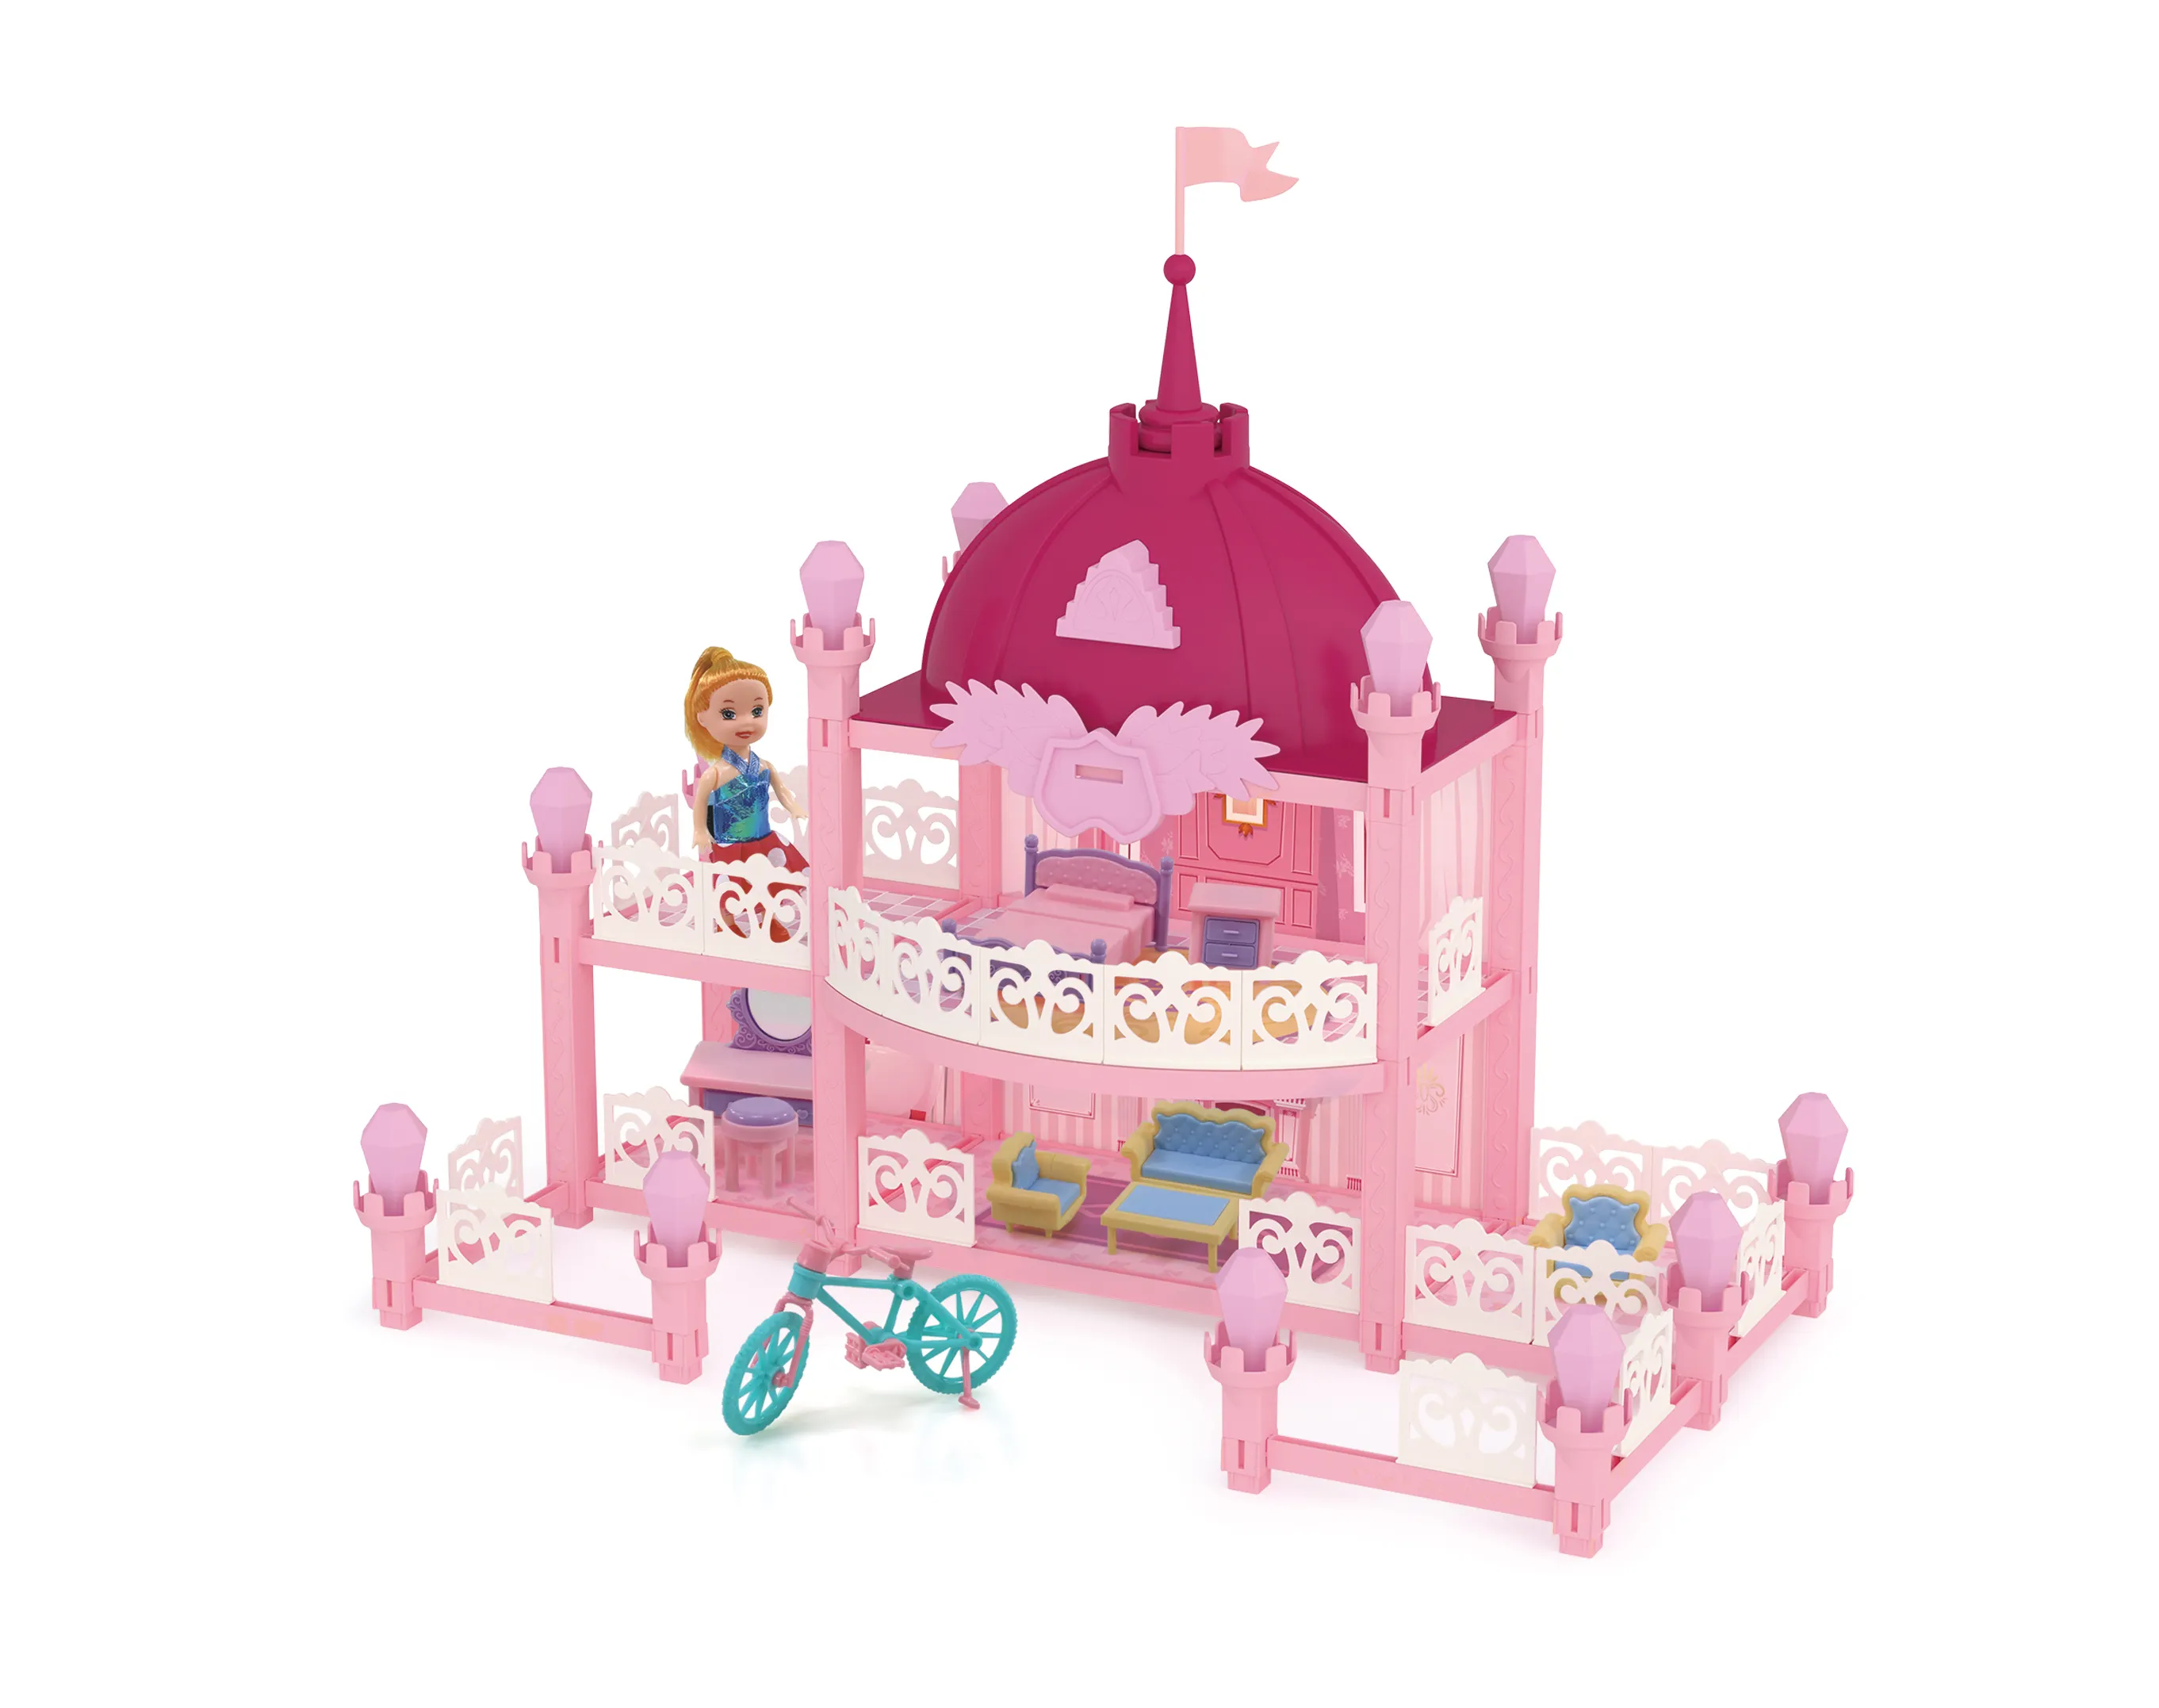 Prenses kale DIY birleştirin villa oyuncaklar kızlar bebek evi oyna taklit mobilya seti